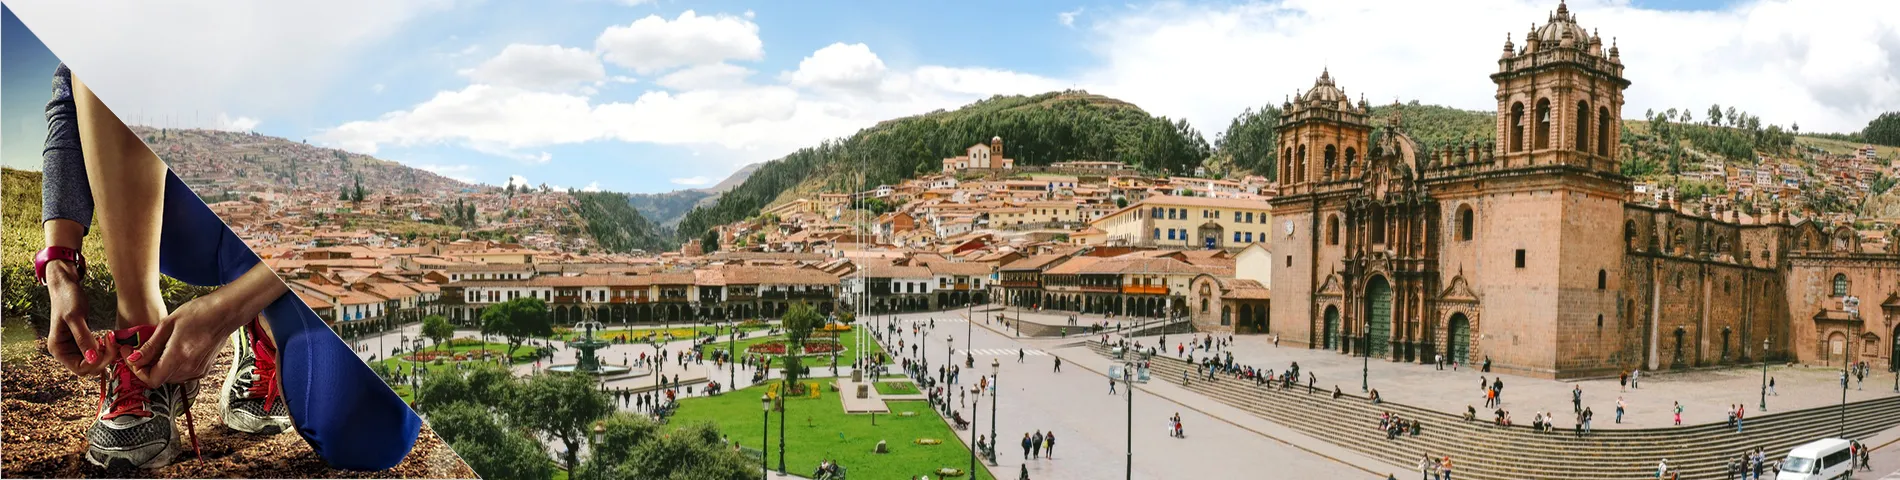 Cuzco - Španělština a Další sporty